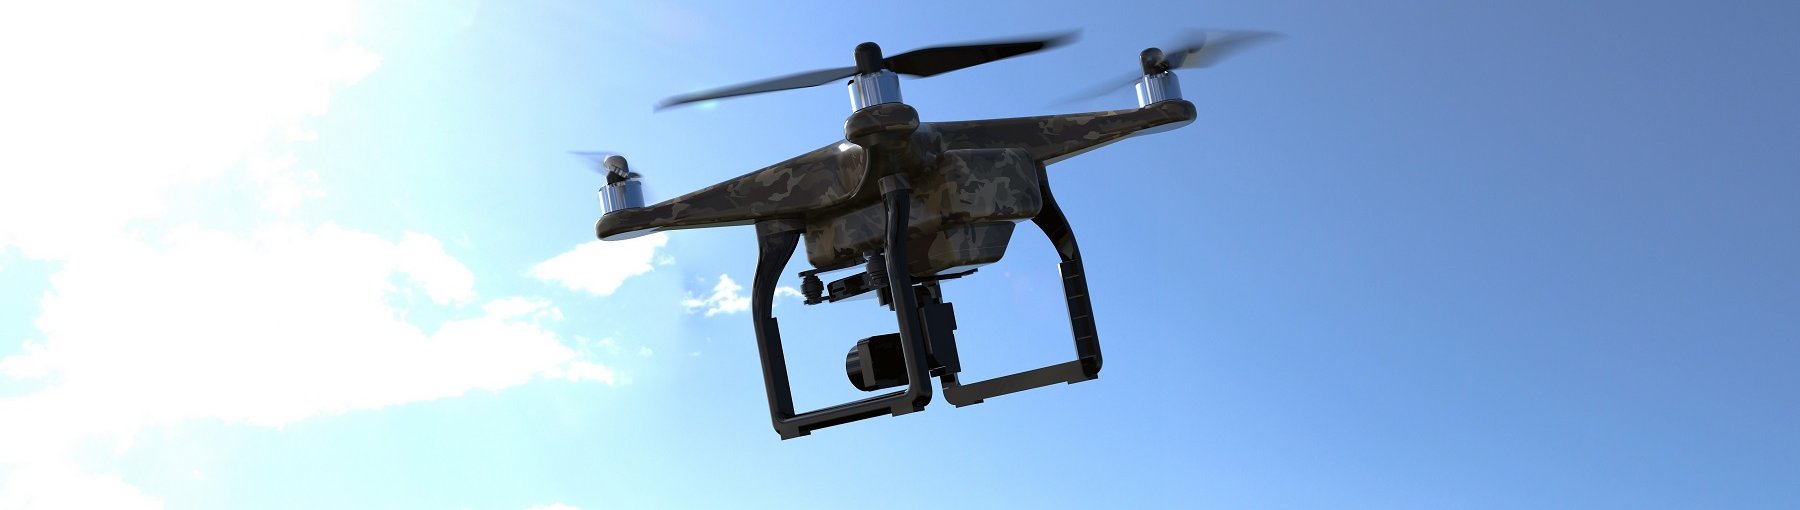 Budimex: dron usprawni prace geodezyjne. Fot. Lukas Davidziuk/Shutterstock